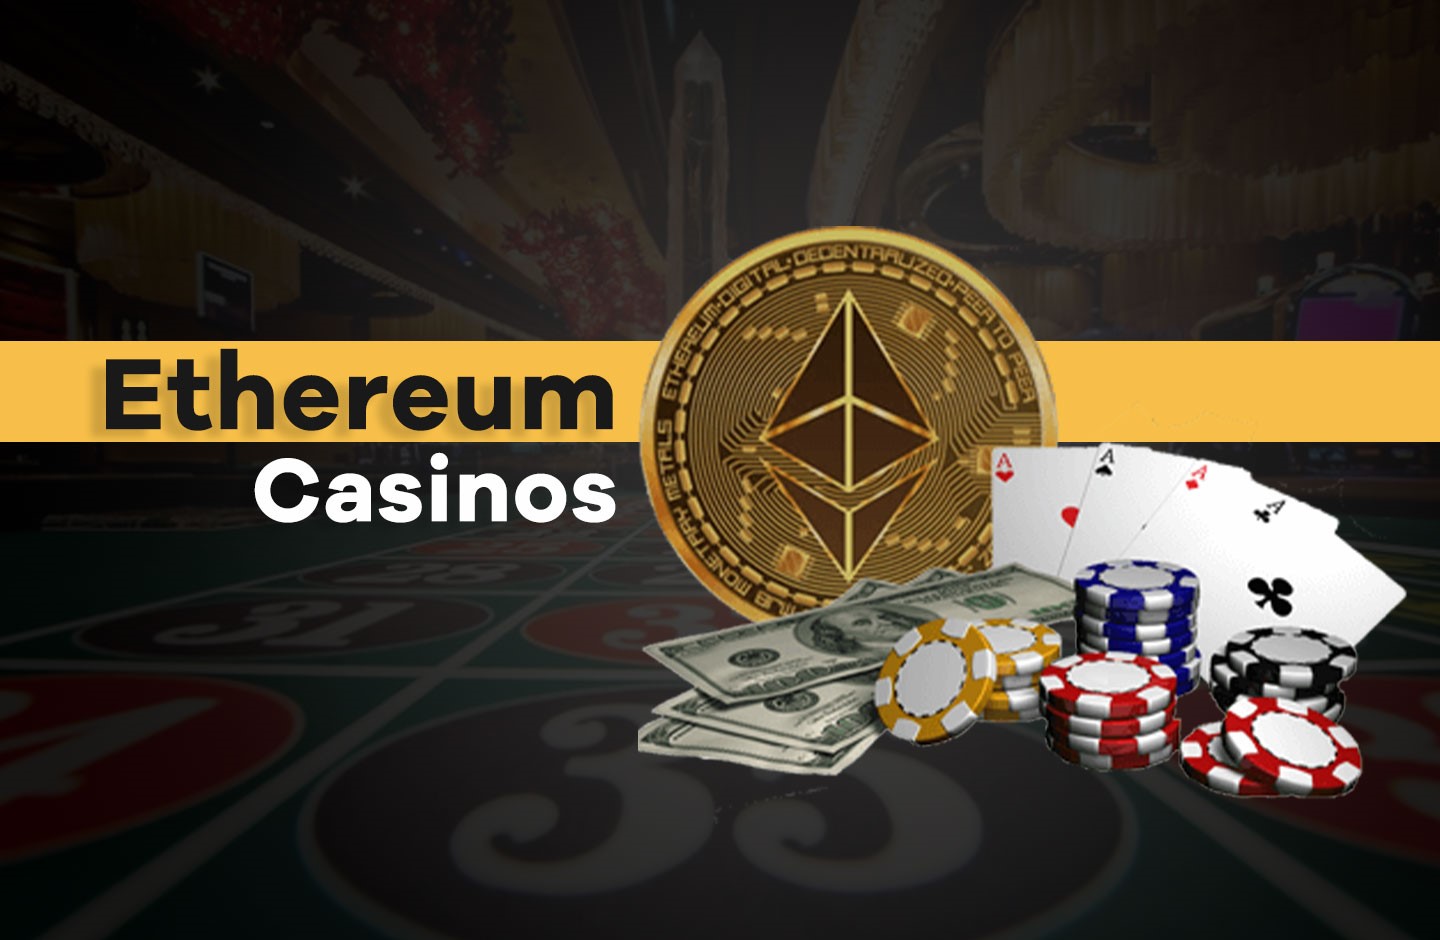 Best Ethereum Casino